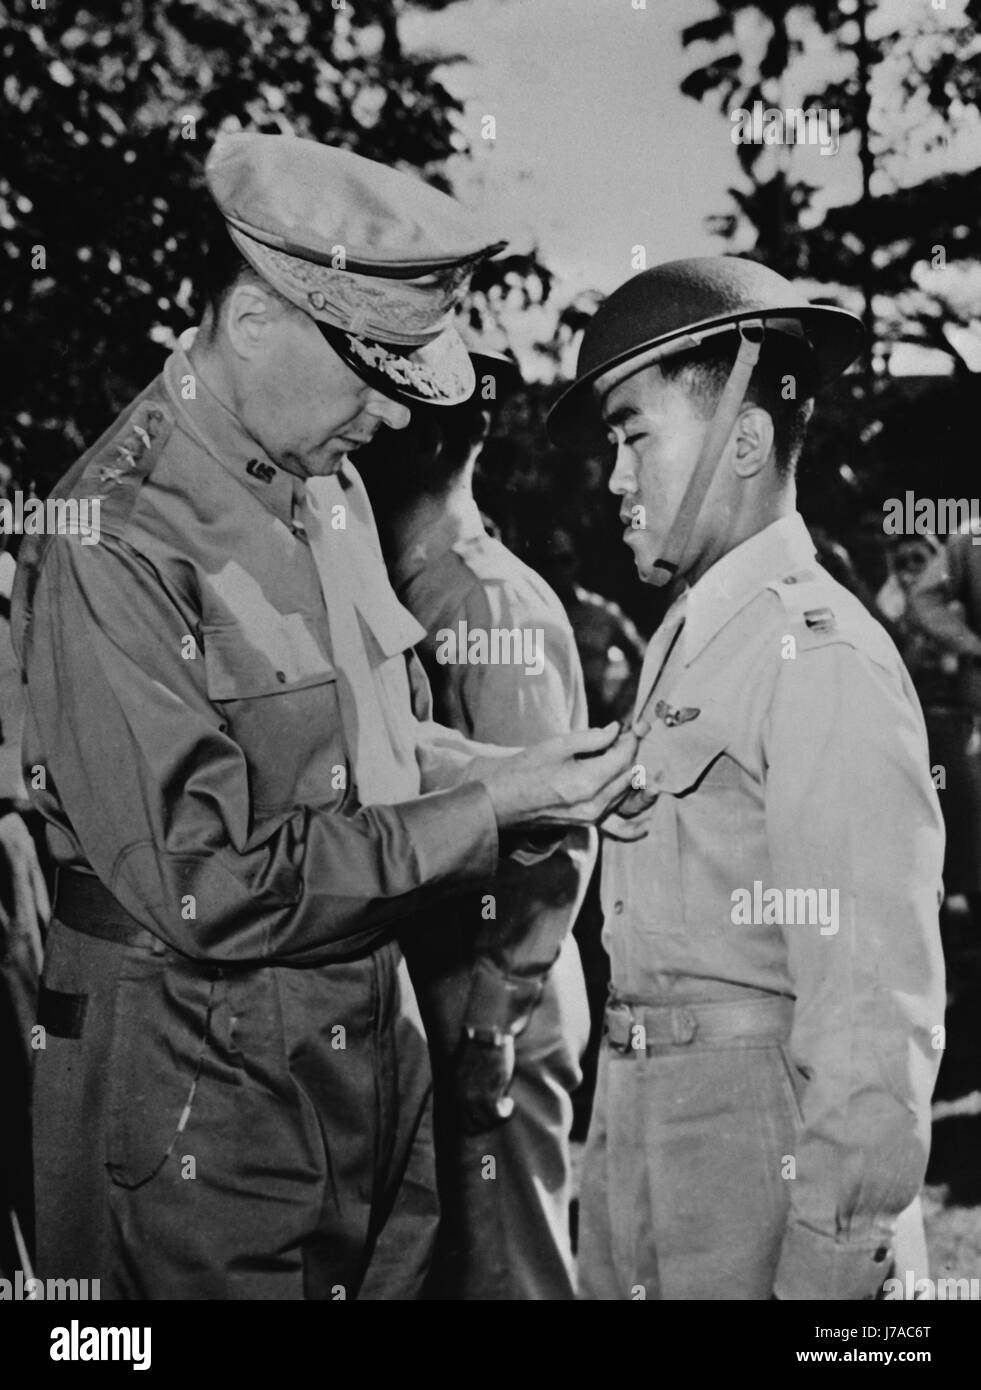 General Douglas MacArthur fixieren ein bemerkenswerter Service-Kreuz auf einem Filipino Air Force Captain, 1941. Stockfoto